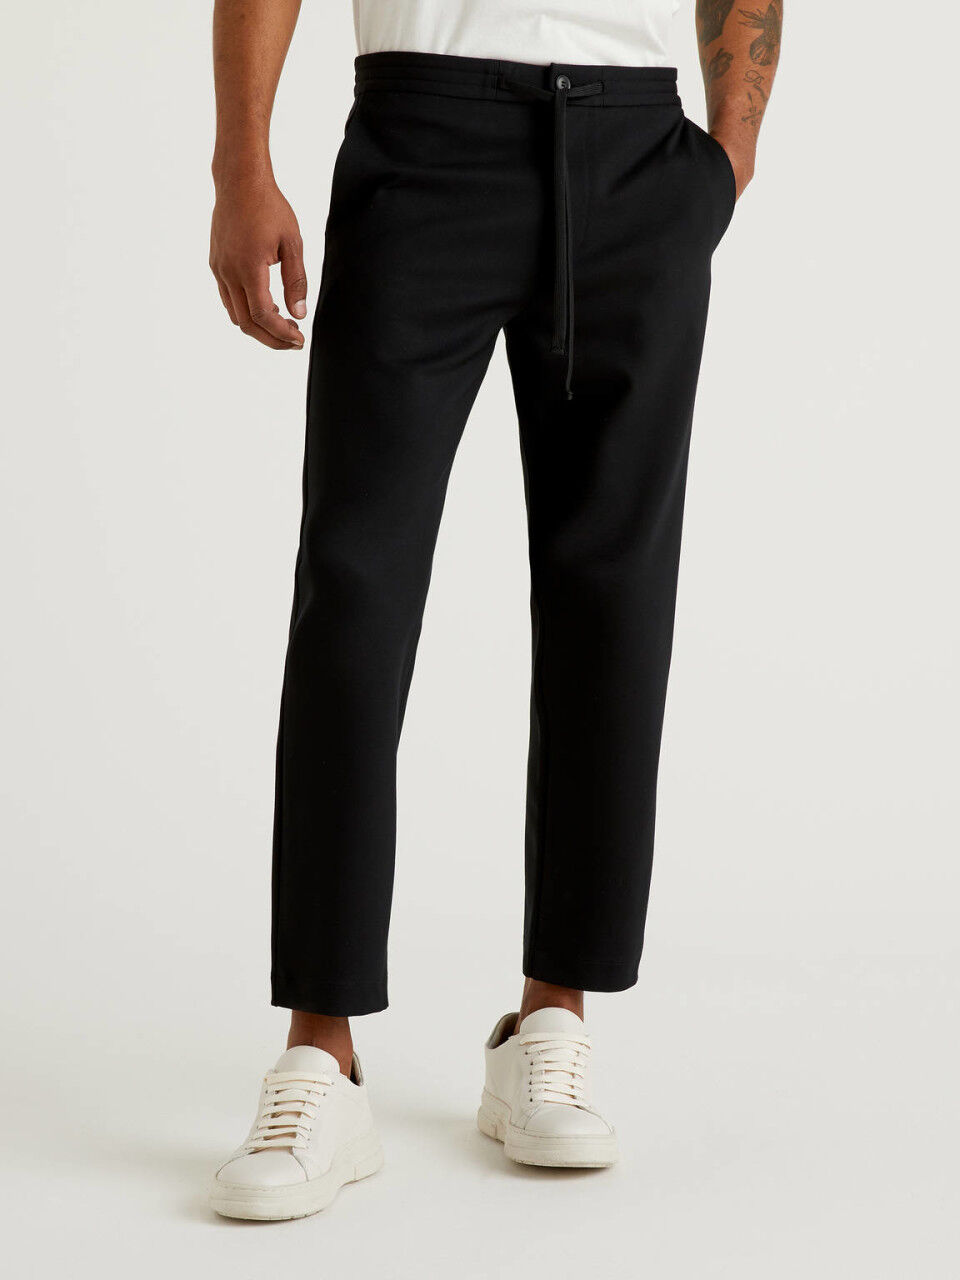 Chinos Pants Men Slim Fit Men's Trousers Suit Pants Ankle-Length Zipper  Pants Casual Pocket Pleated Solid Men's pants Black XXXXL - Walmart.com